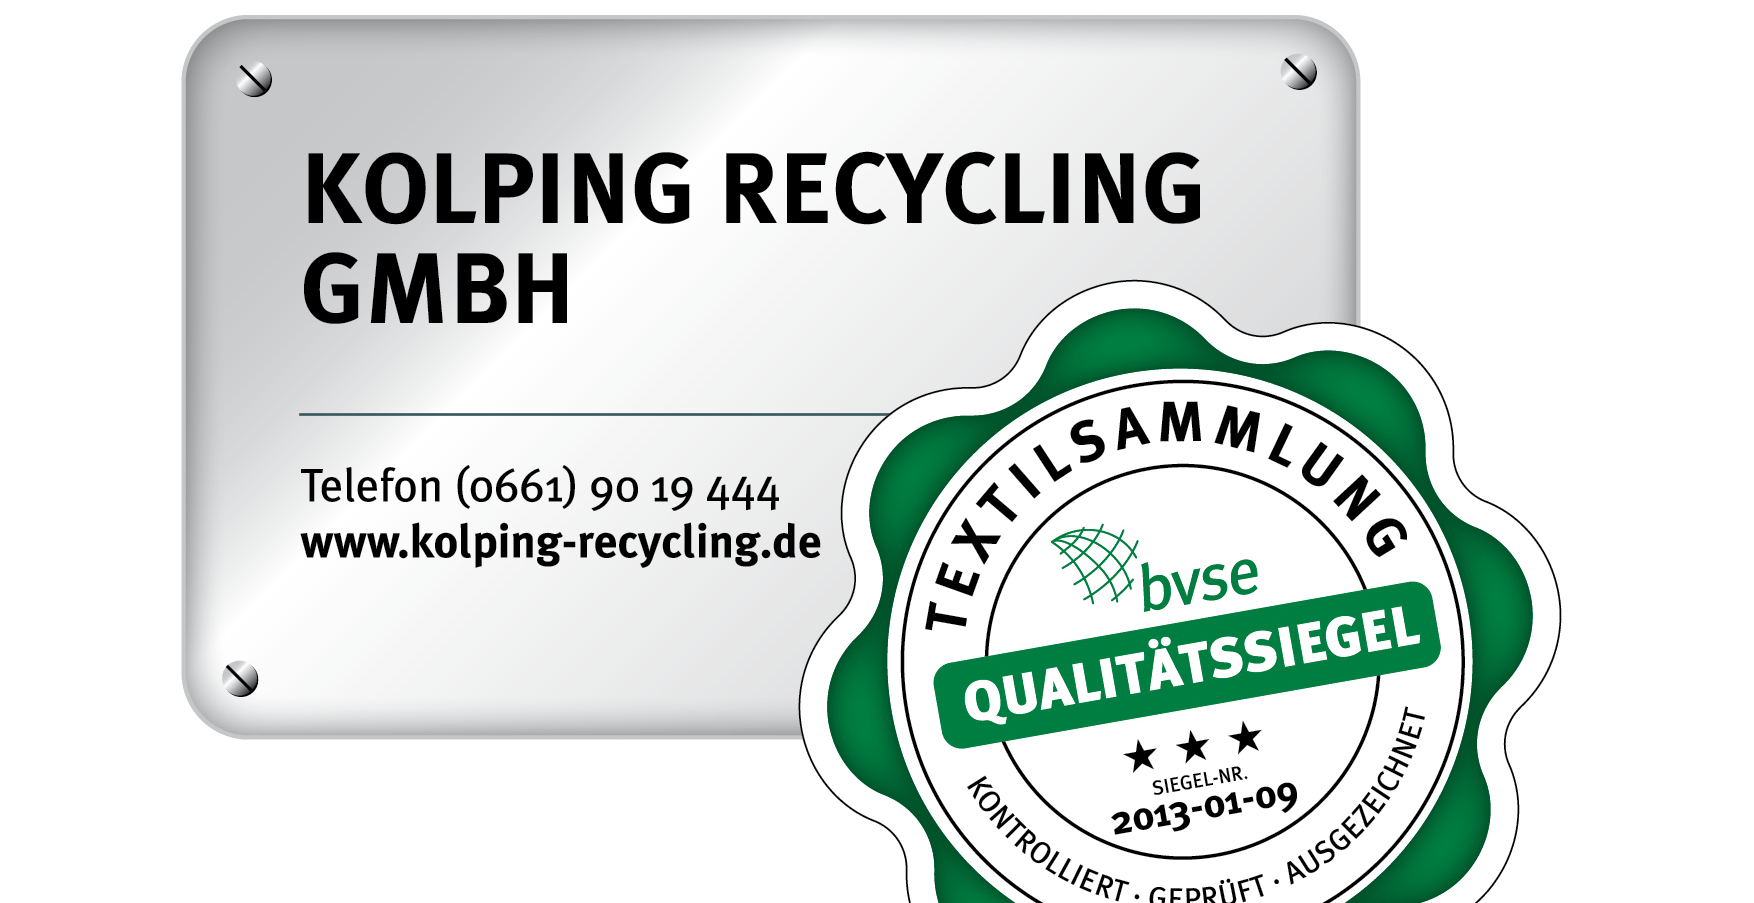 Kolping Recycling GmbH erhält Zertifizierung im 11. Jahr hintereinander